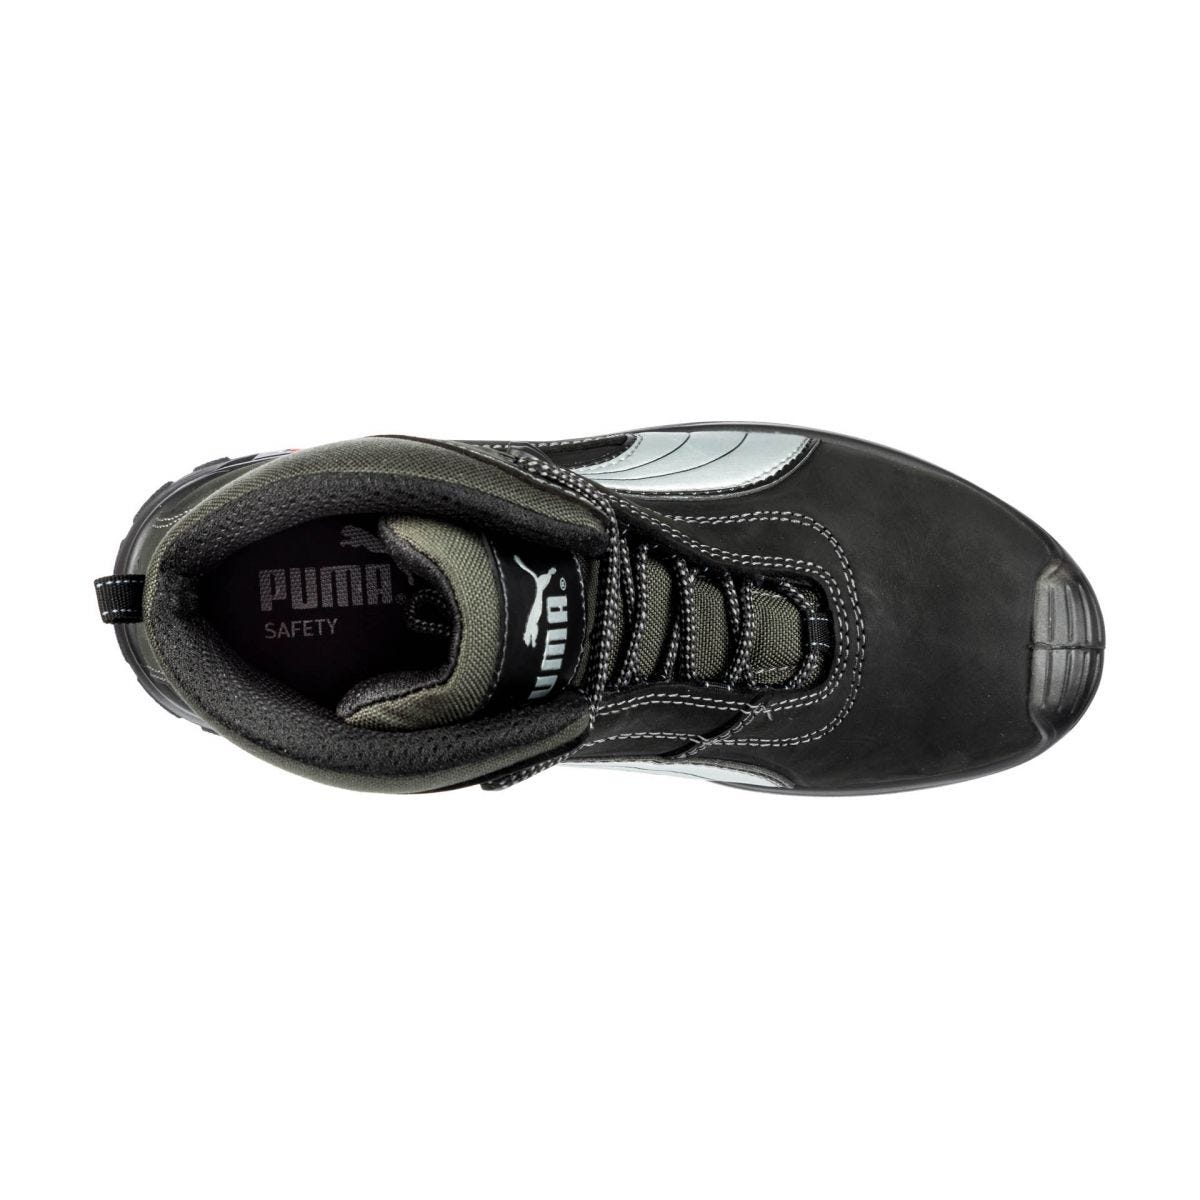 Chaussures de sécurité Cascades mid S3 HRO SRC - Puma - Taille 42 2